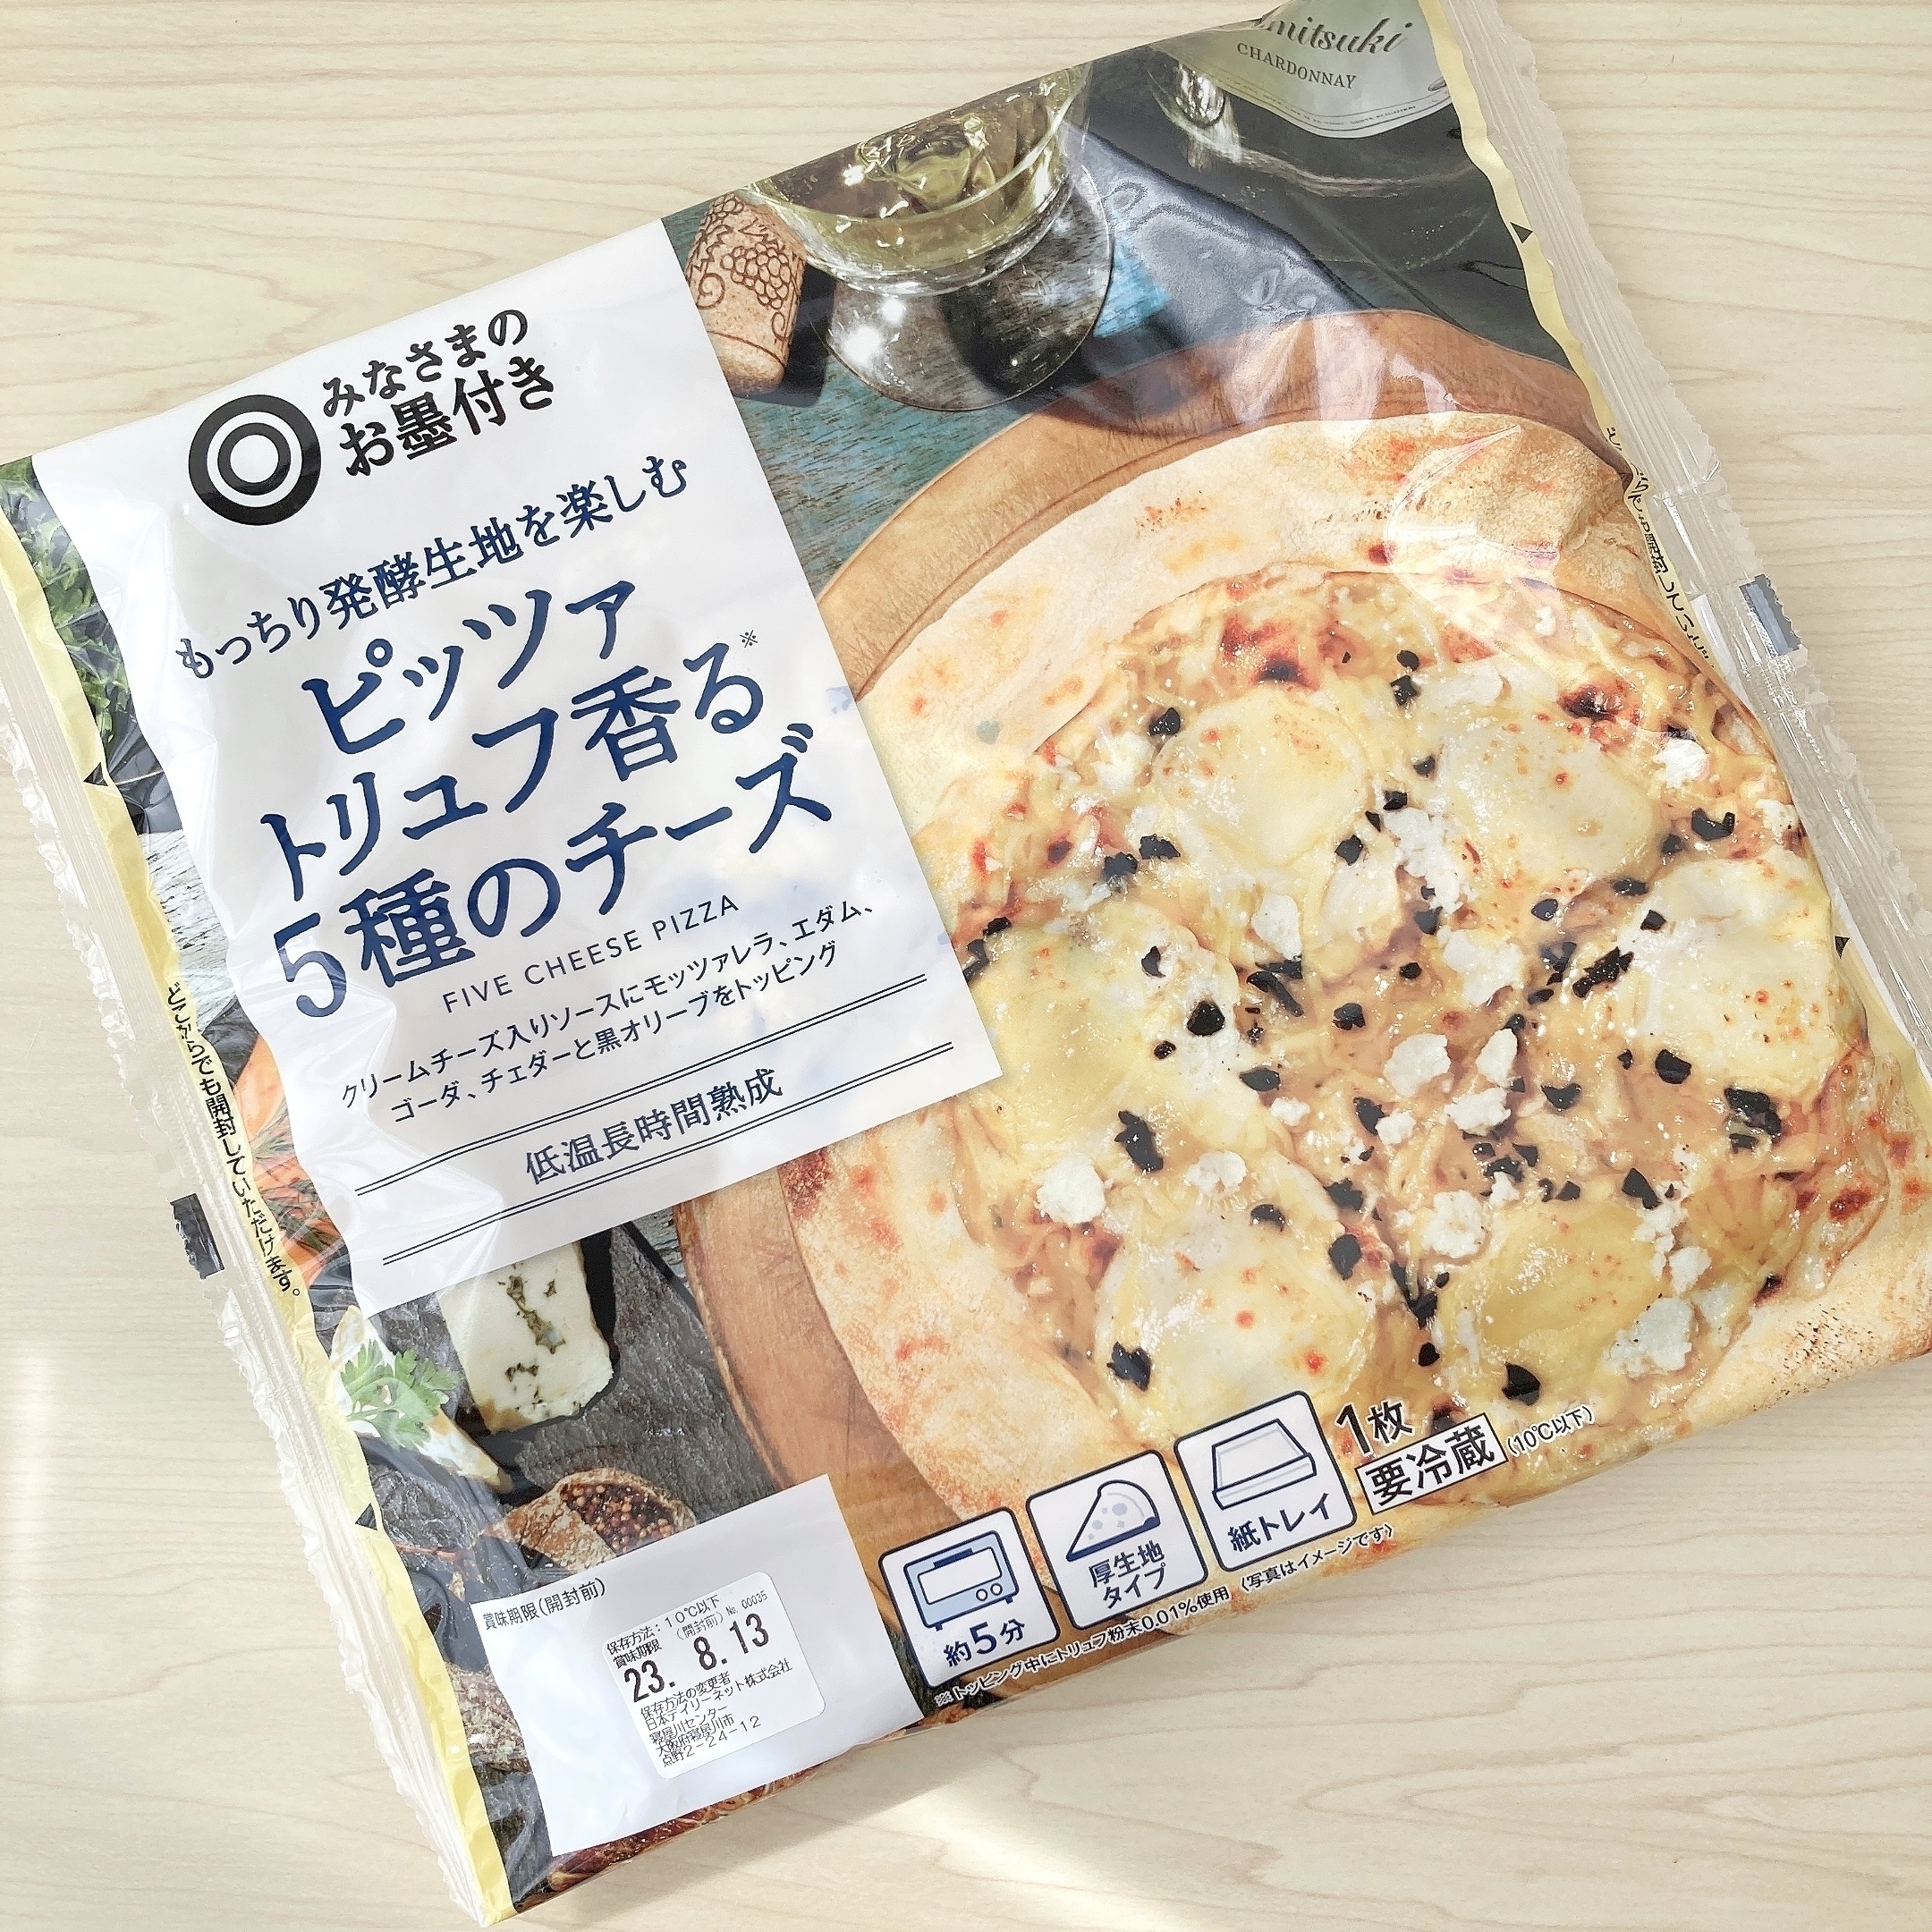 SEIYU（西友）のおすすめ食品「もっちり発酵生地を楽しむ ピッツァ トリュフ香る 5種のチーズ」